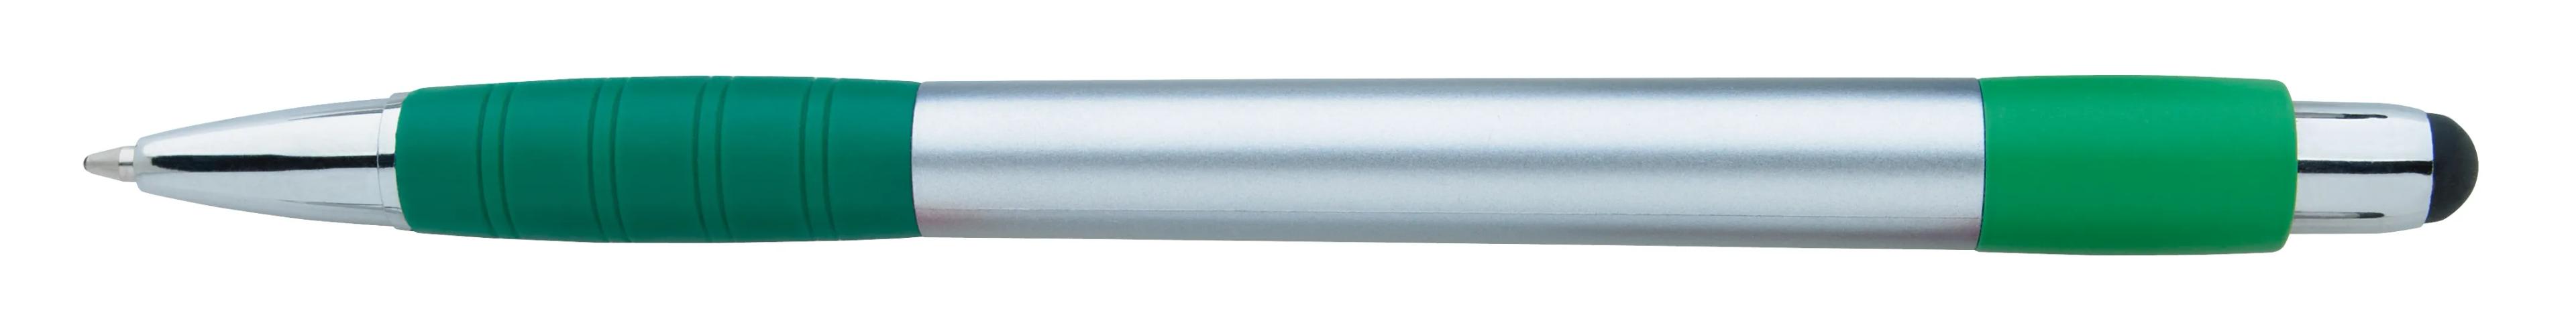 Silver Element Stylus Pen 7 of 53